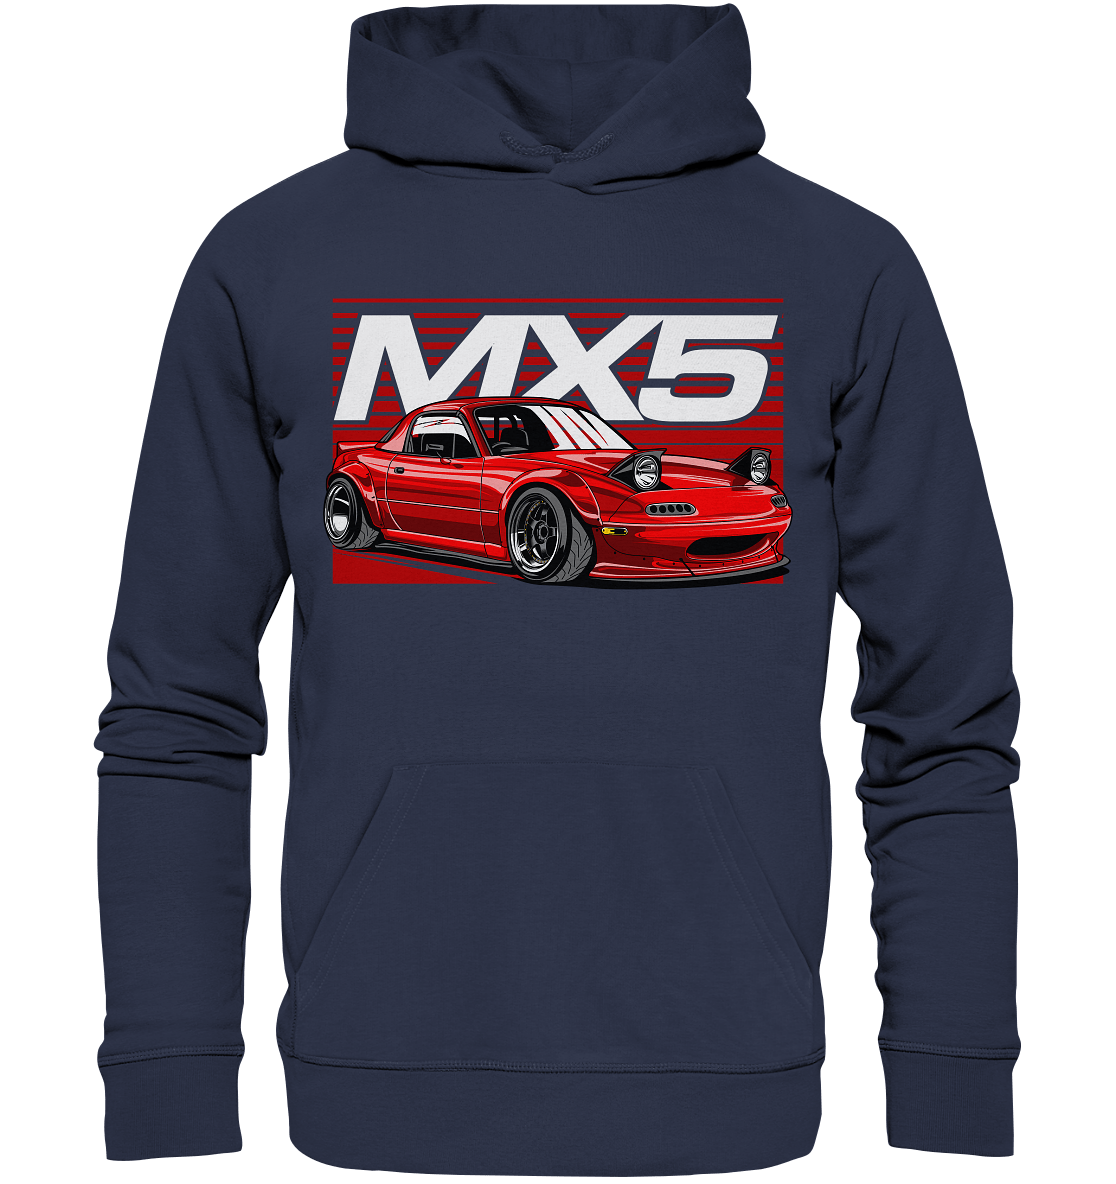 Widebody Mazda MX5 - Premium Unisex Hoodie - MotoMerch.de